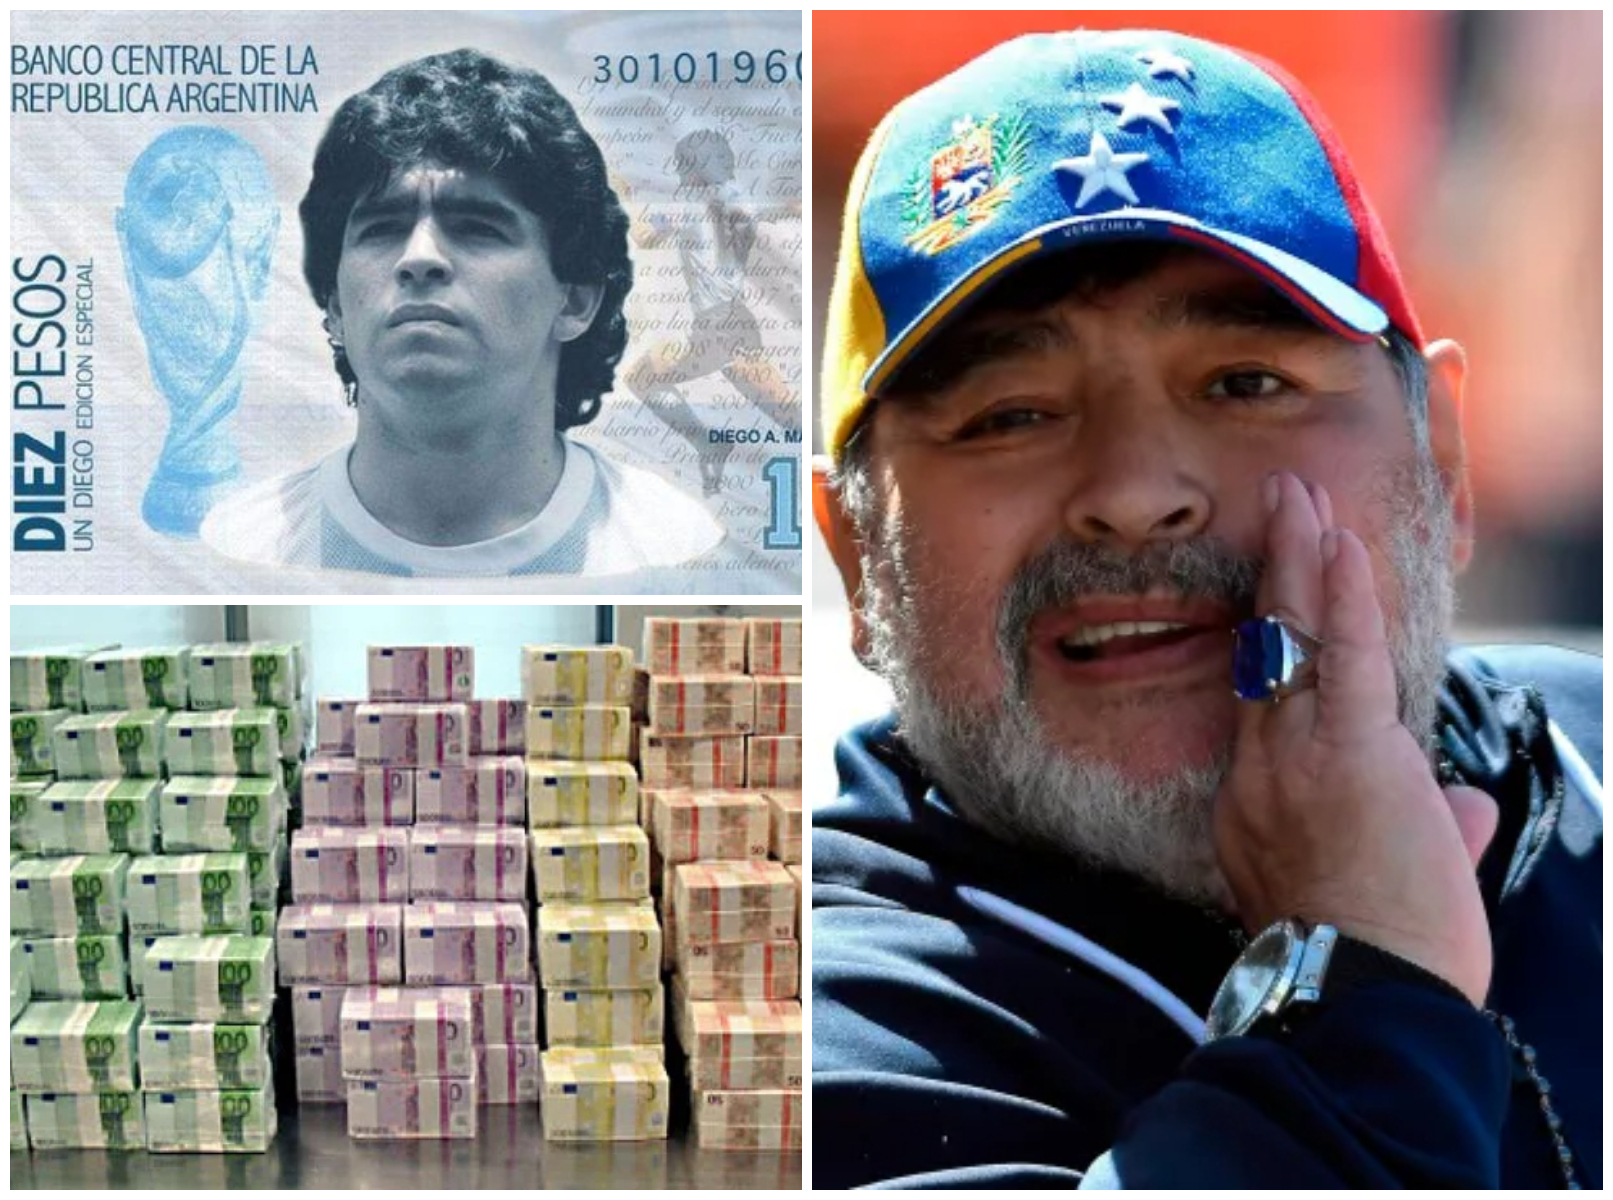 La mai bine de trei ani de la moartea sa, Maradona a scăpat de procese! Judecat pentru evaziune fiscală și absolvit post-mortem